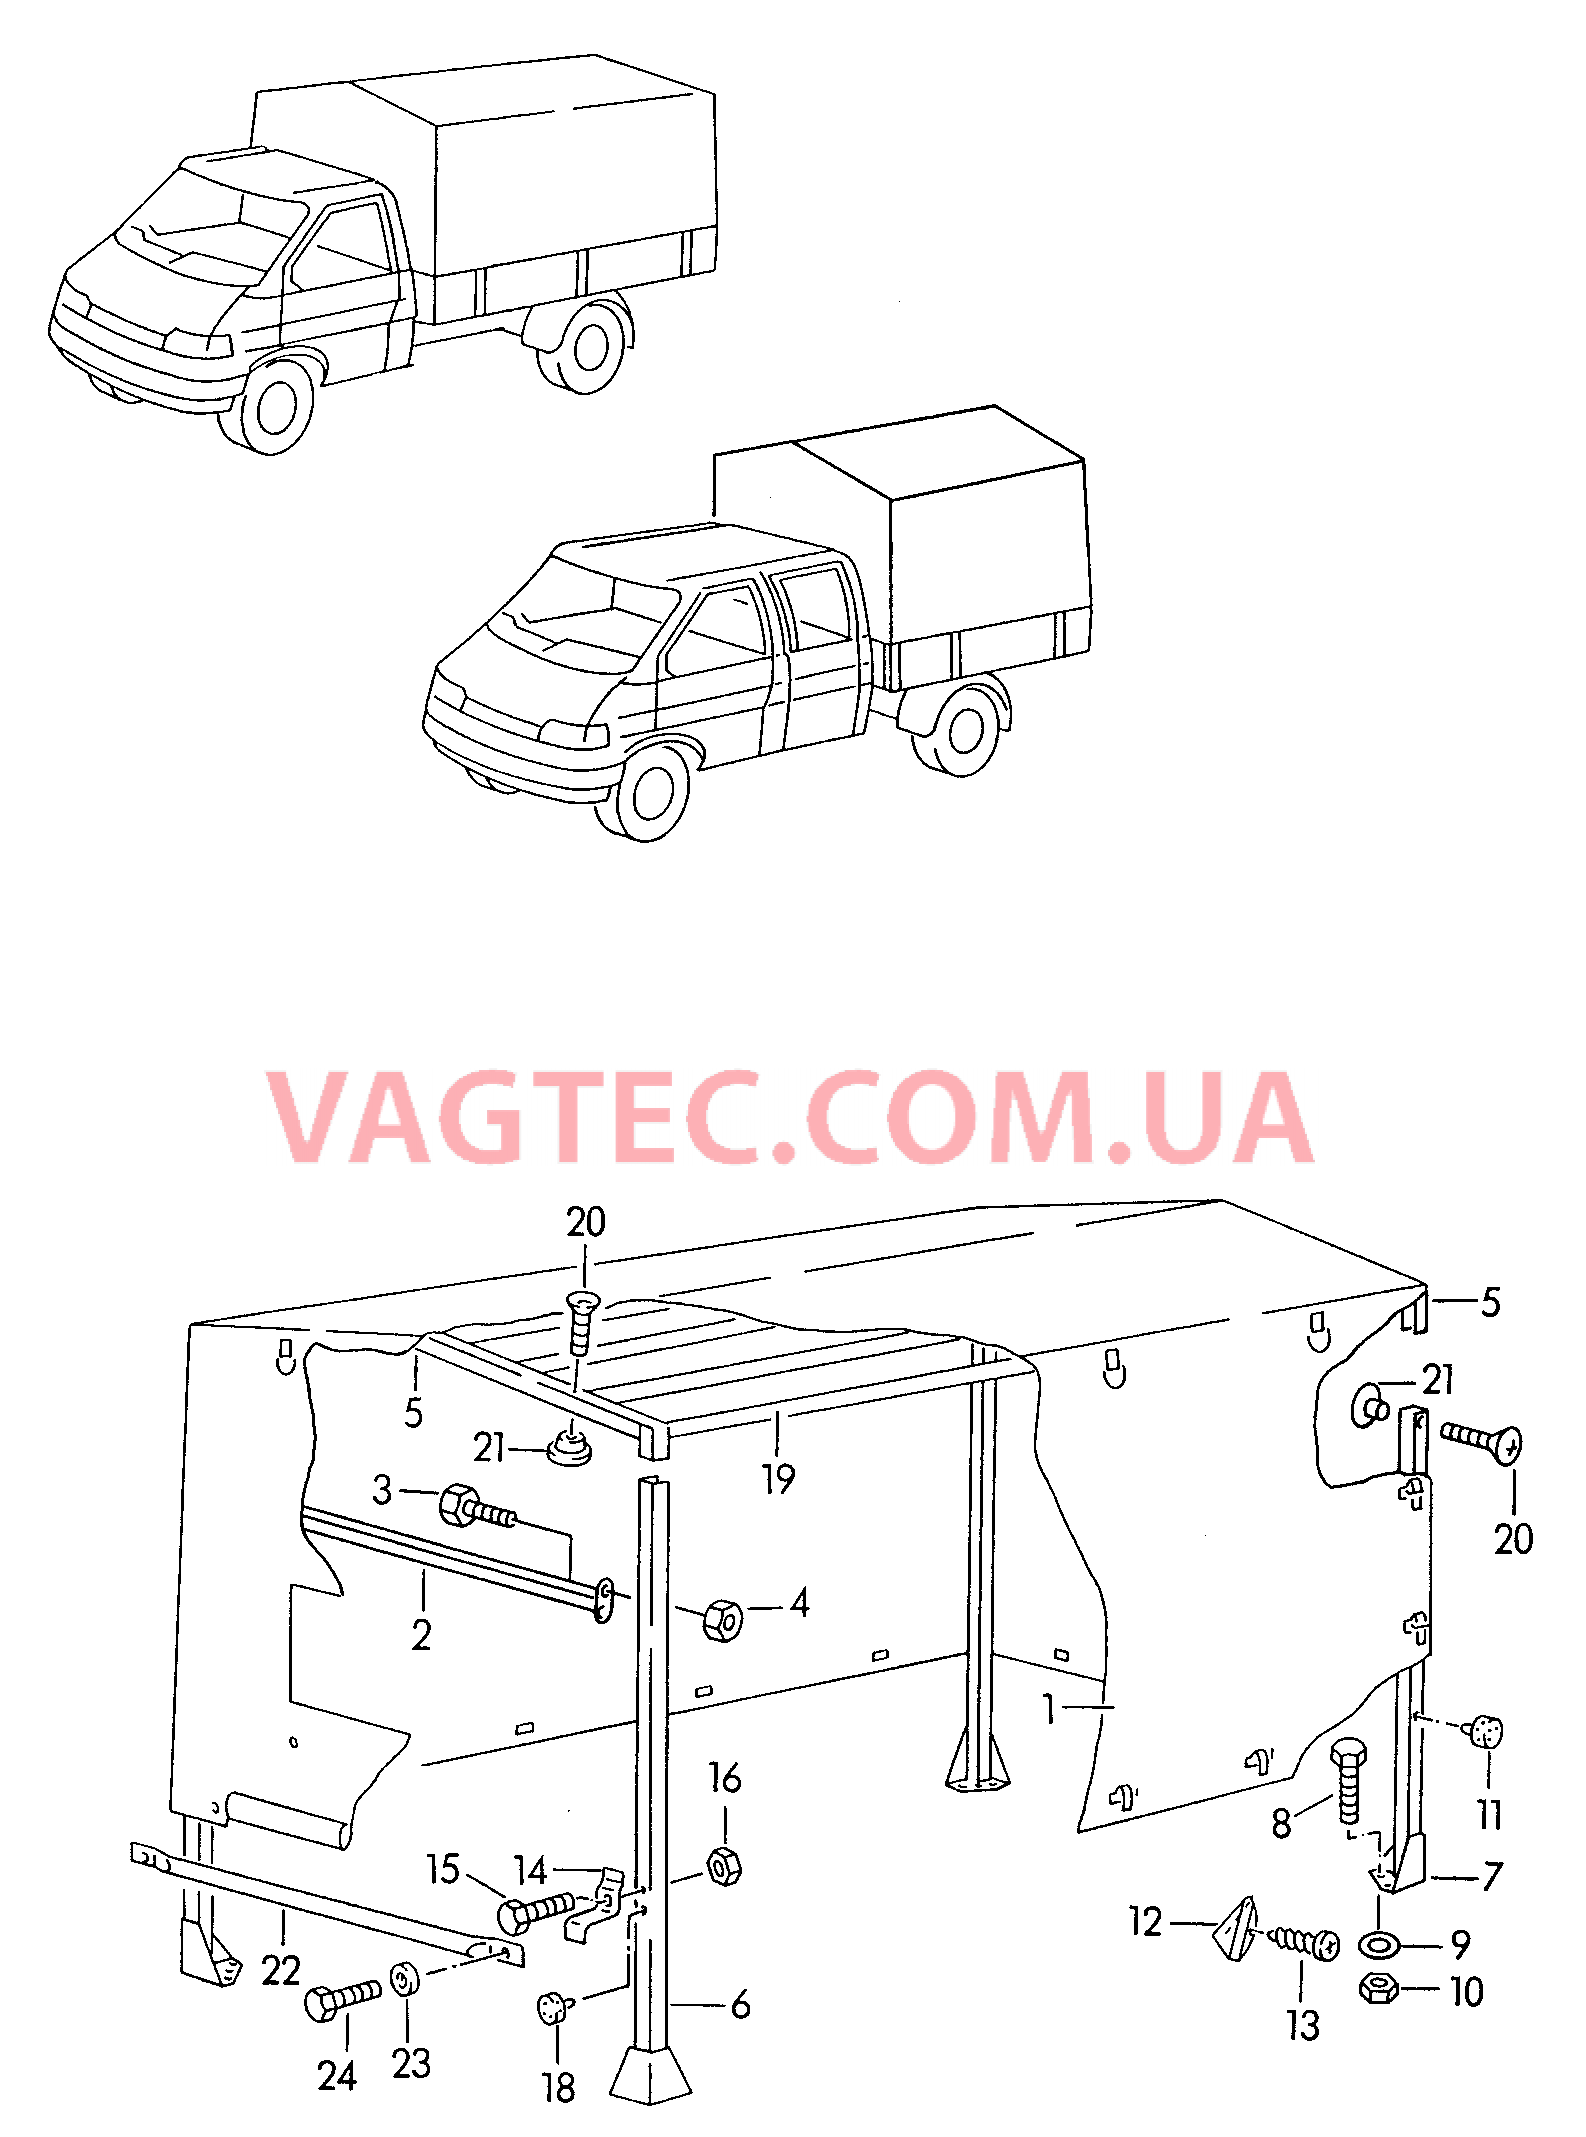 Каркас складной крыши с тентом и деталями крепления  для VOLKSWAGEN Transporter 2000